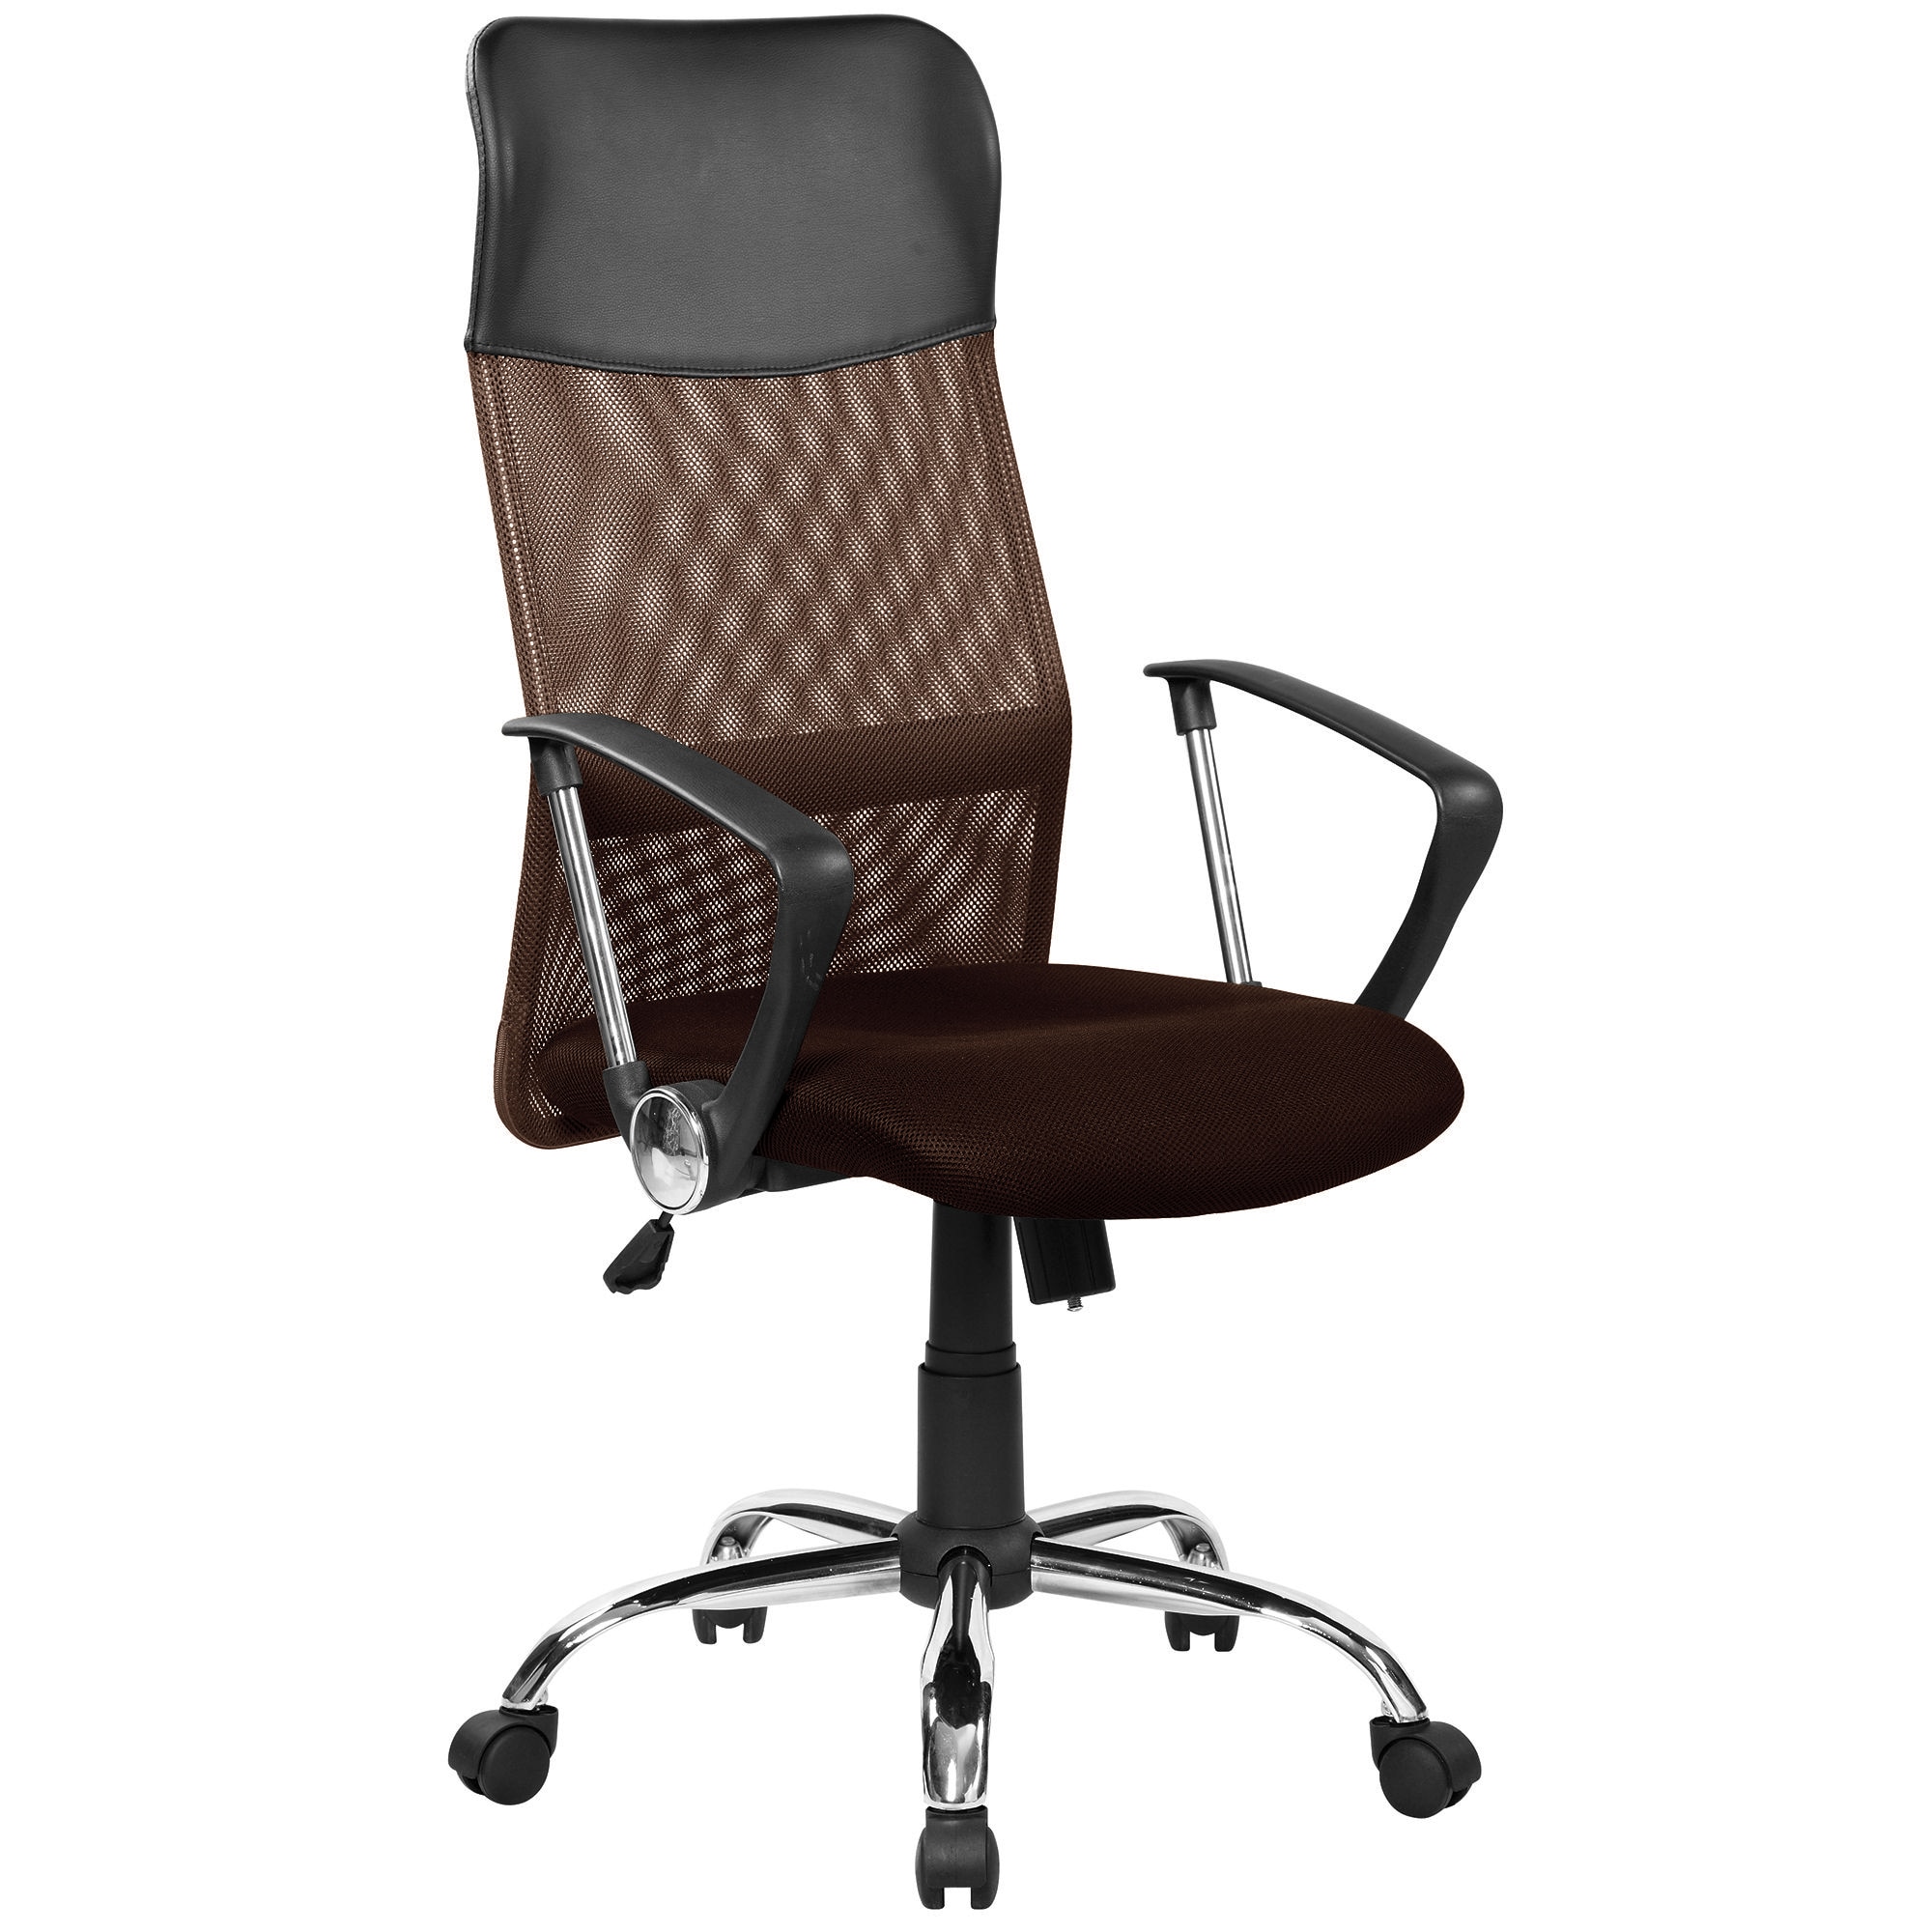 Спинка кресла. Sigma h-945f/ec13. Кресло для руководителя easy Chair 589 TC черное (сетка/ткань, металл). Офисное кресло RCH 8074. Кресло руководителя FX-139.